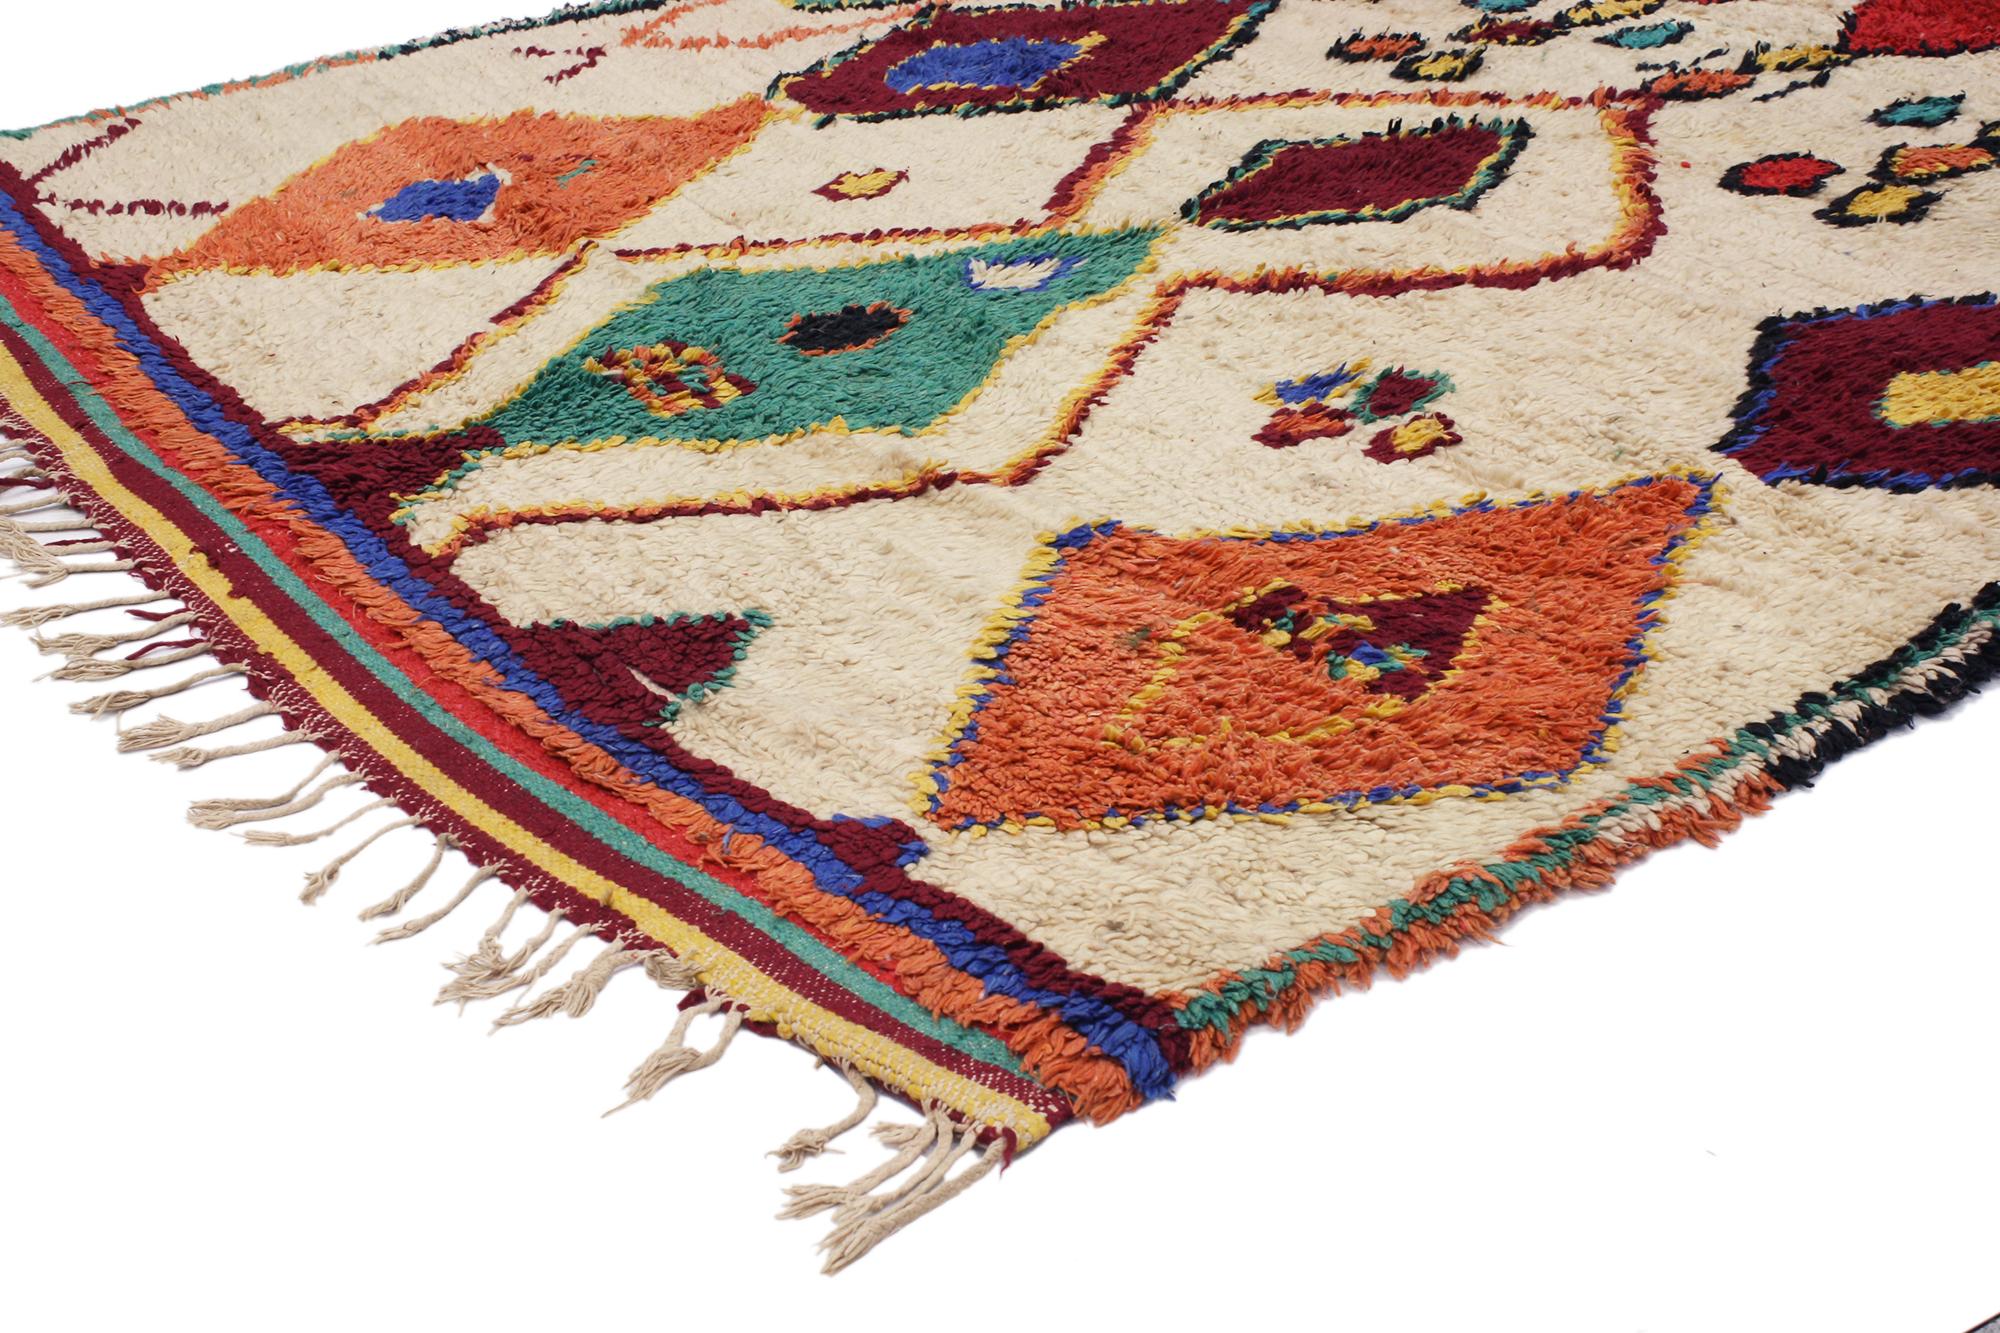 20374 Vintage Berber Marokkanischer Azilal-Teppich, 05'00 x 06'09. Treten Sie ein in die fesselnde Welt der Azilal-Teppiche, in der jede Faser eine Geschichte erzählt, die von geschickten Kunsthandwerkern inmitten der lebendigen Landschaften